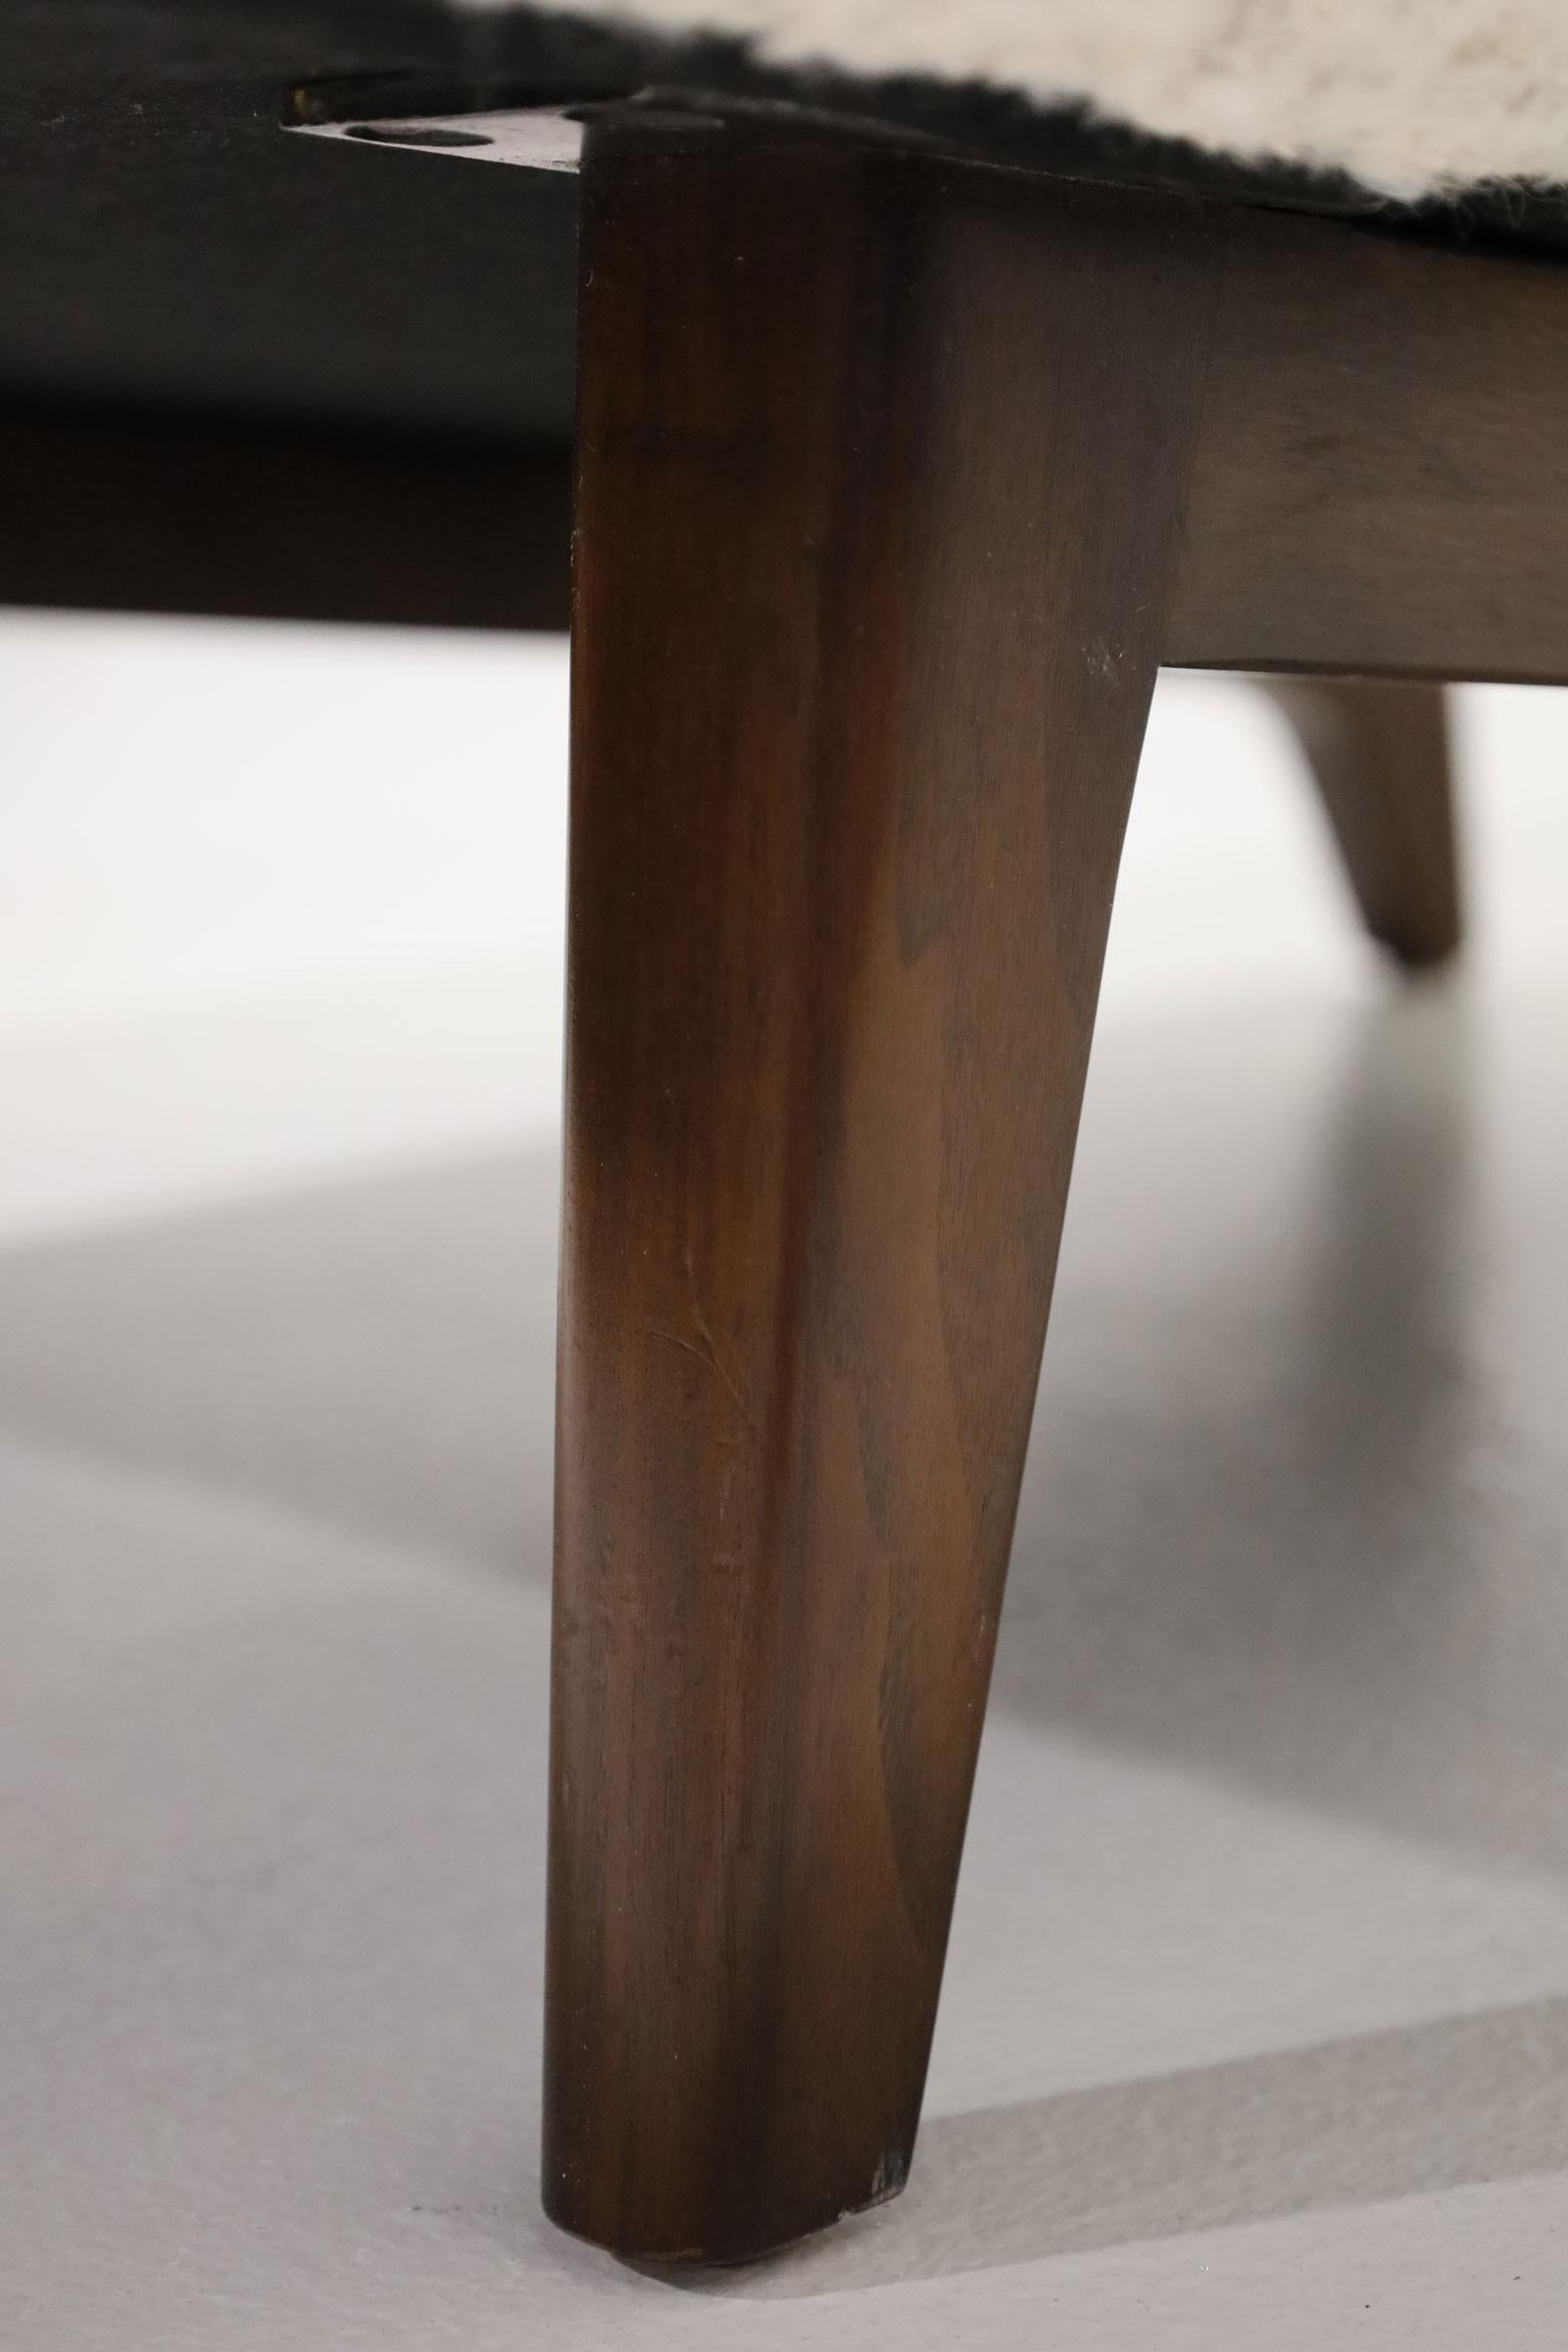 Une magnifique chaise nouvellement tapissée en HOLLY HUNT Great Plains Cardigan, un tissu bouclé qui offre beaucoup de texture et de douceur. L'ottoman mesure 15 